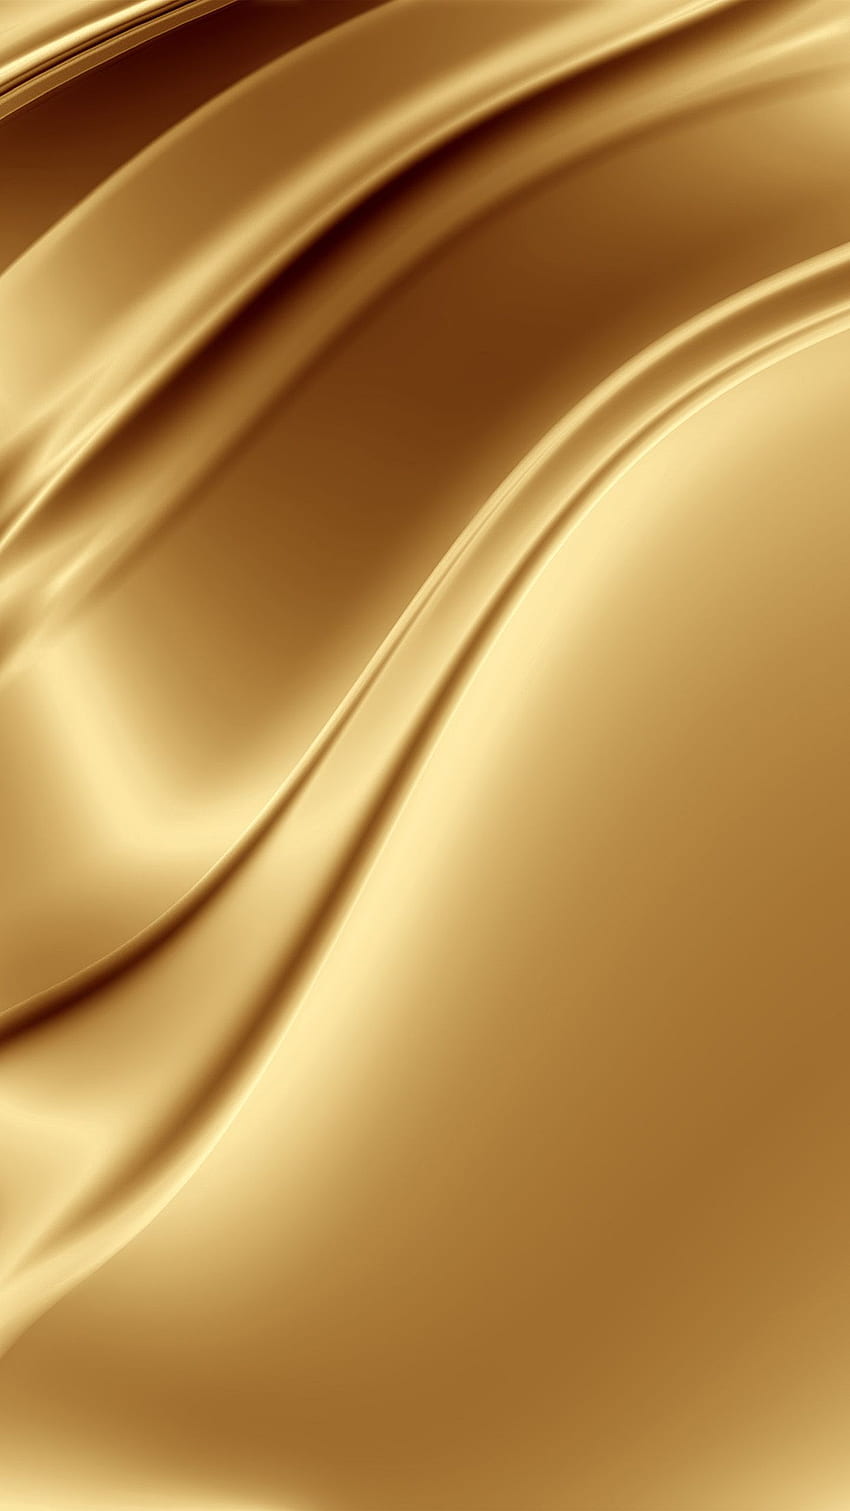 iPhone 6 Gold Wallpaper là điều hoàn hảo cho những người yêu thích sự sang trọng và đẳng cấp. Với tông màu vàng nổi bật được thiết kế tinh xảo, màn hình Retina, chiếc điện thoại này sẽ khẳng định phong cách của bạn.